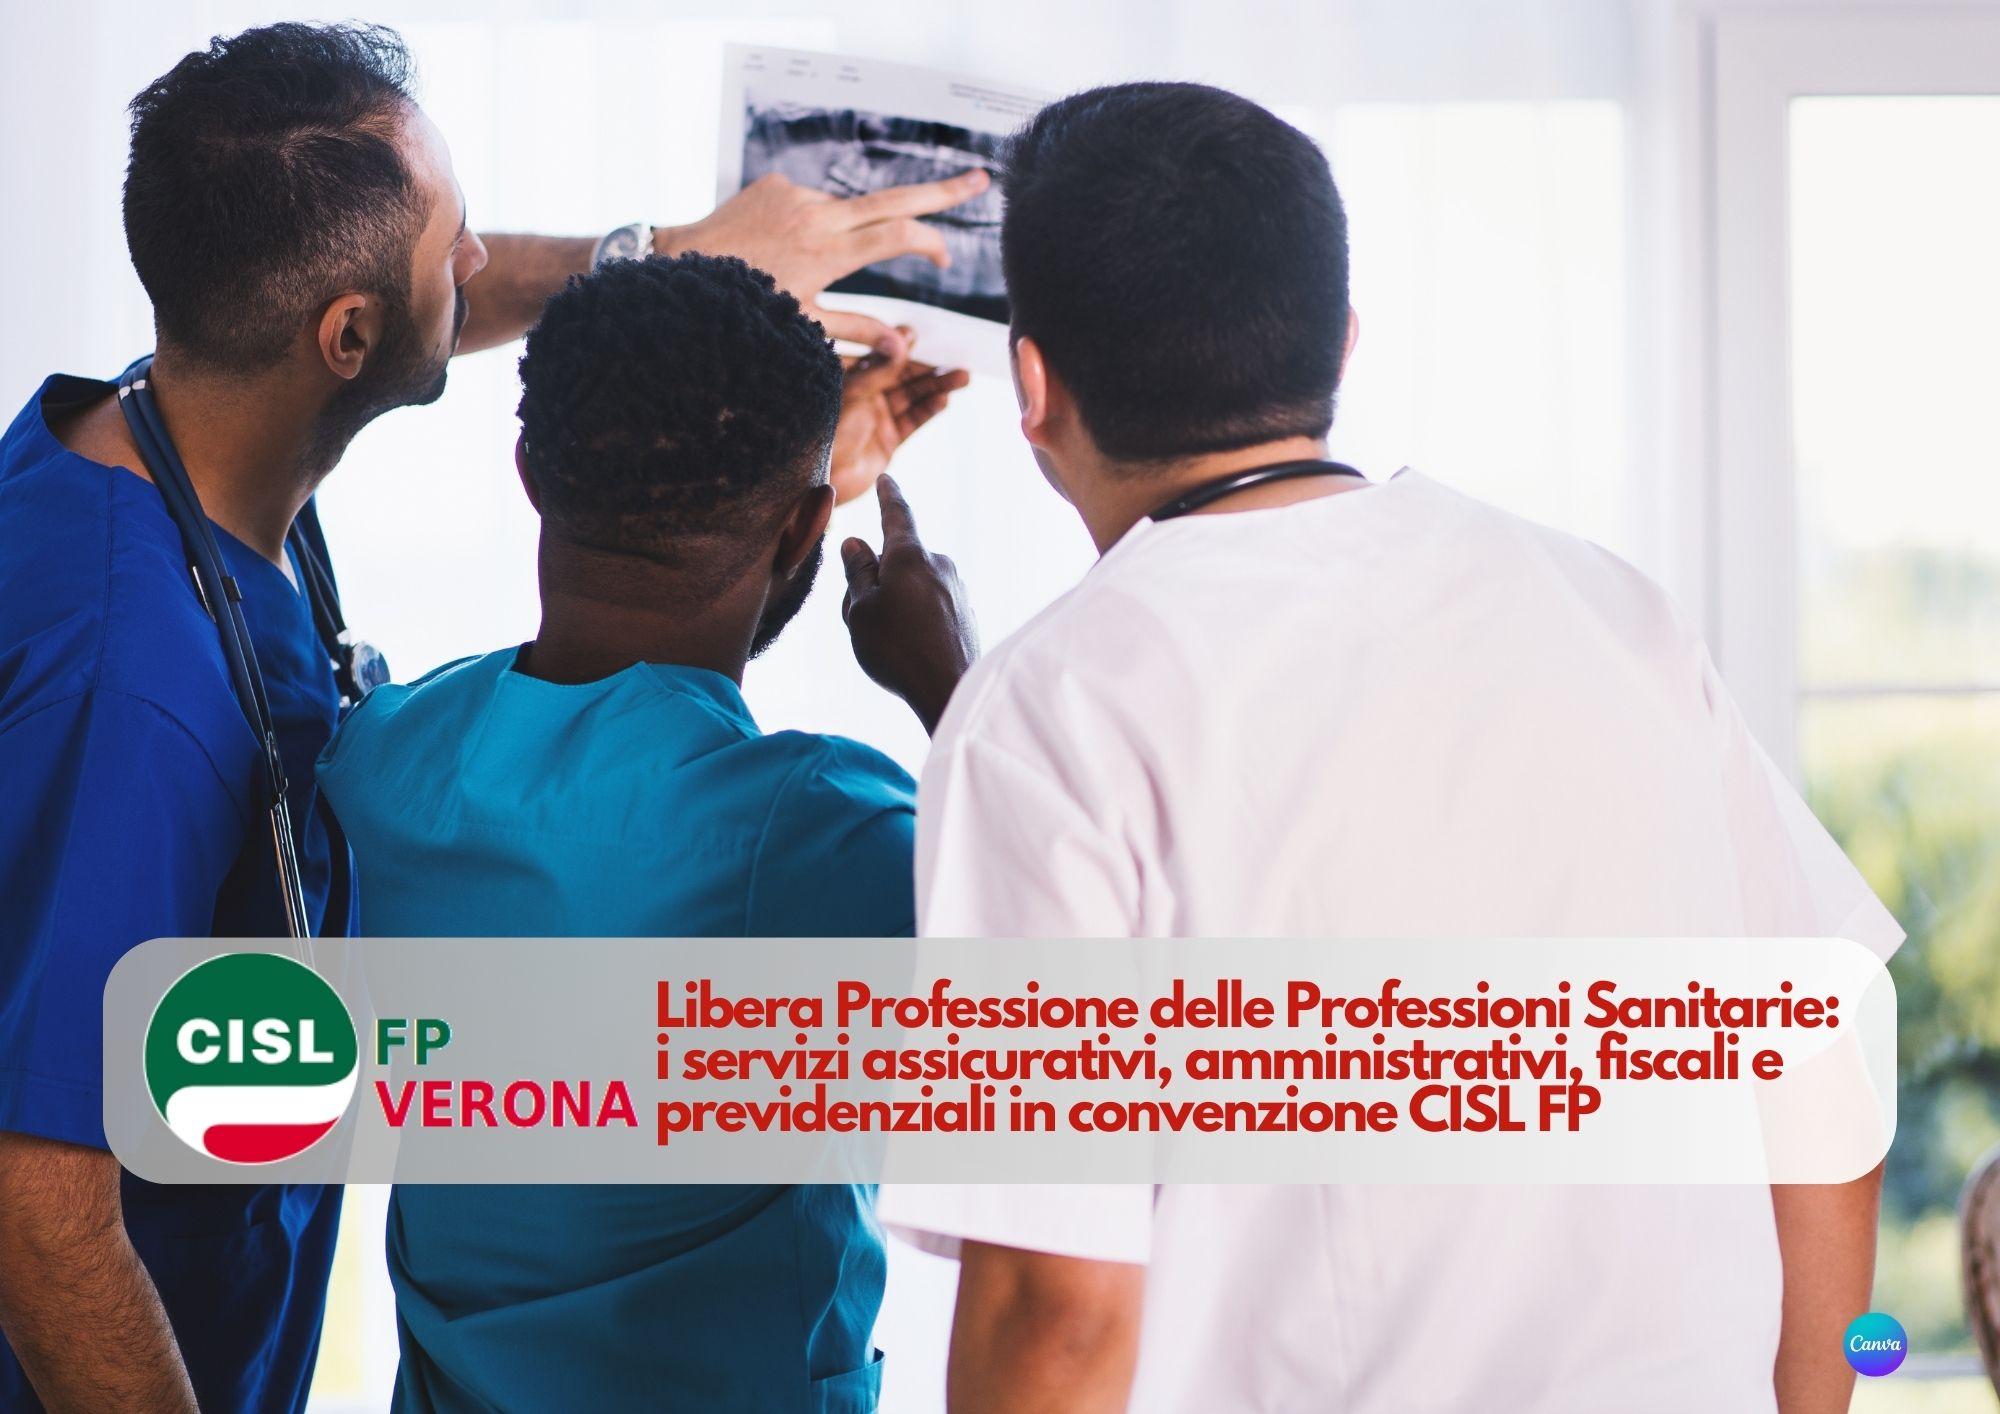 CISL FP Verona. Libera professione per le professioni sanitarie. I servizi CISL FP in convenzione